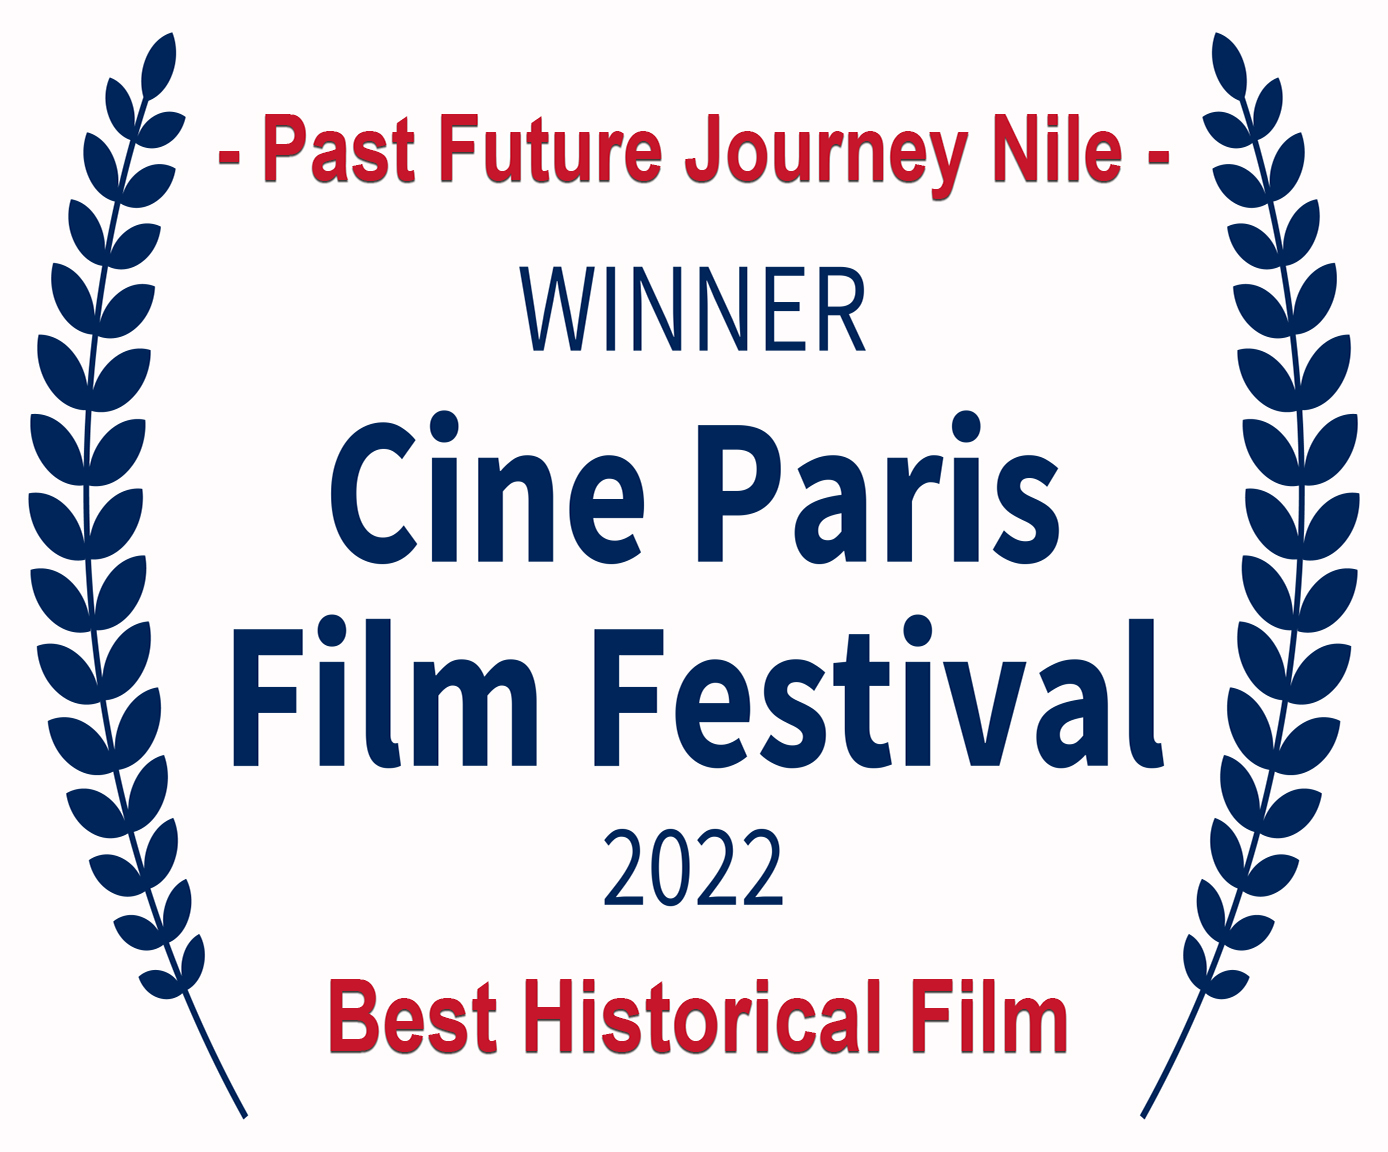 Cine Paris Film Festival 2022